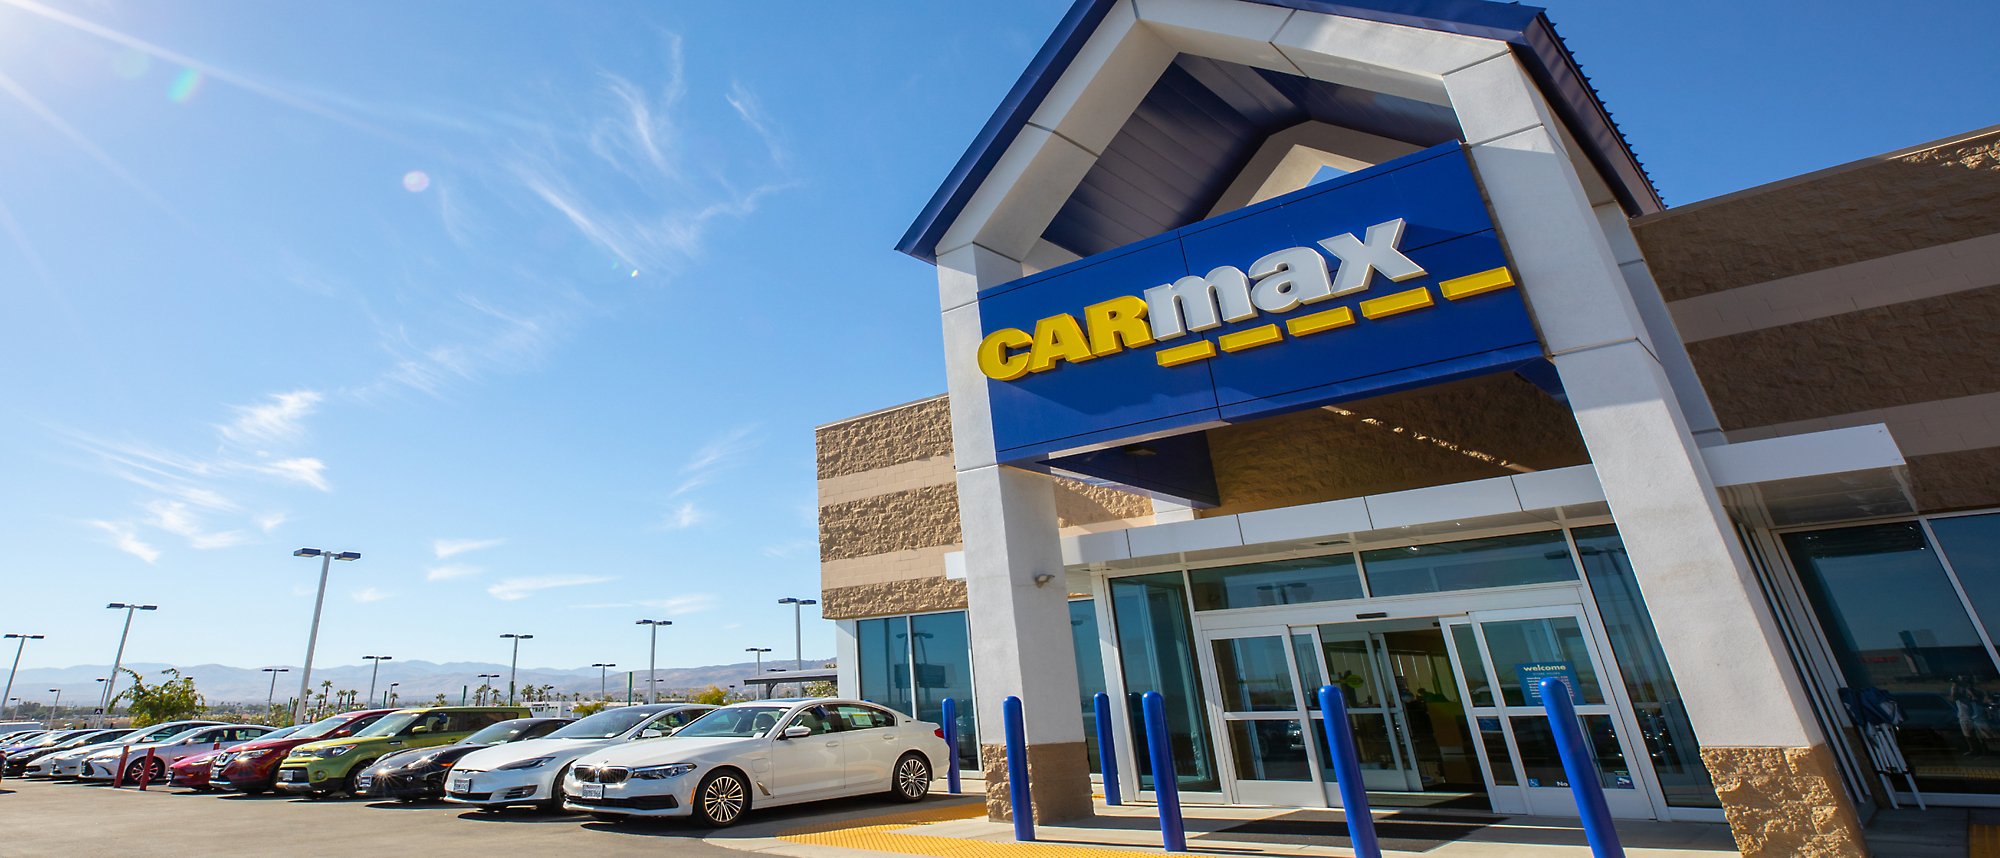 Изображение здания CarMax со множеством автомобилей, припаркованных снаружи